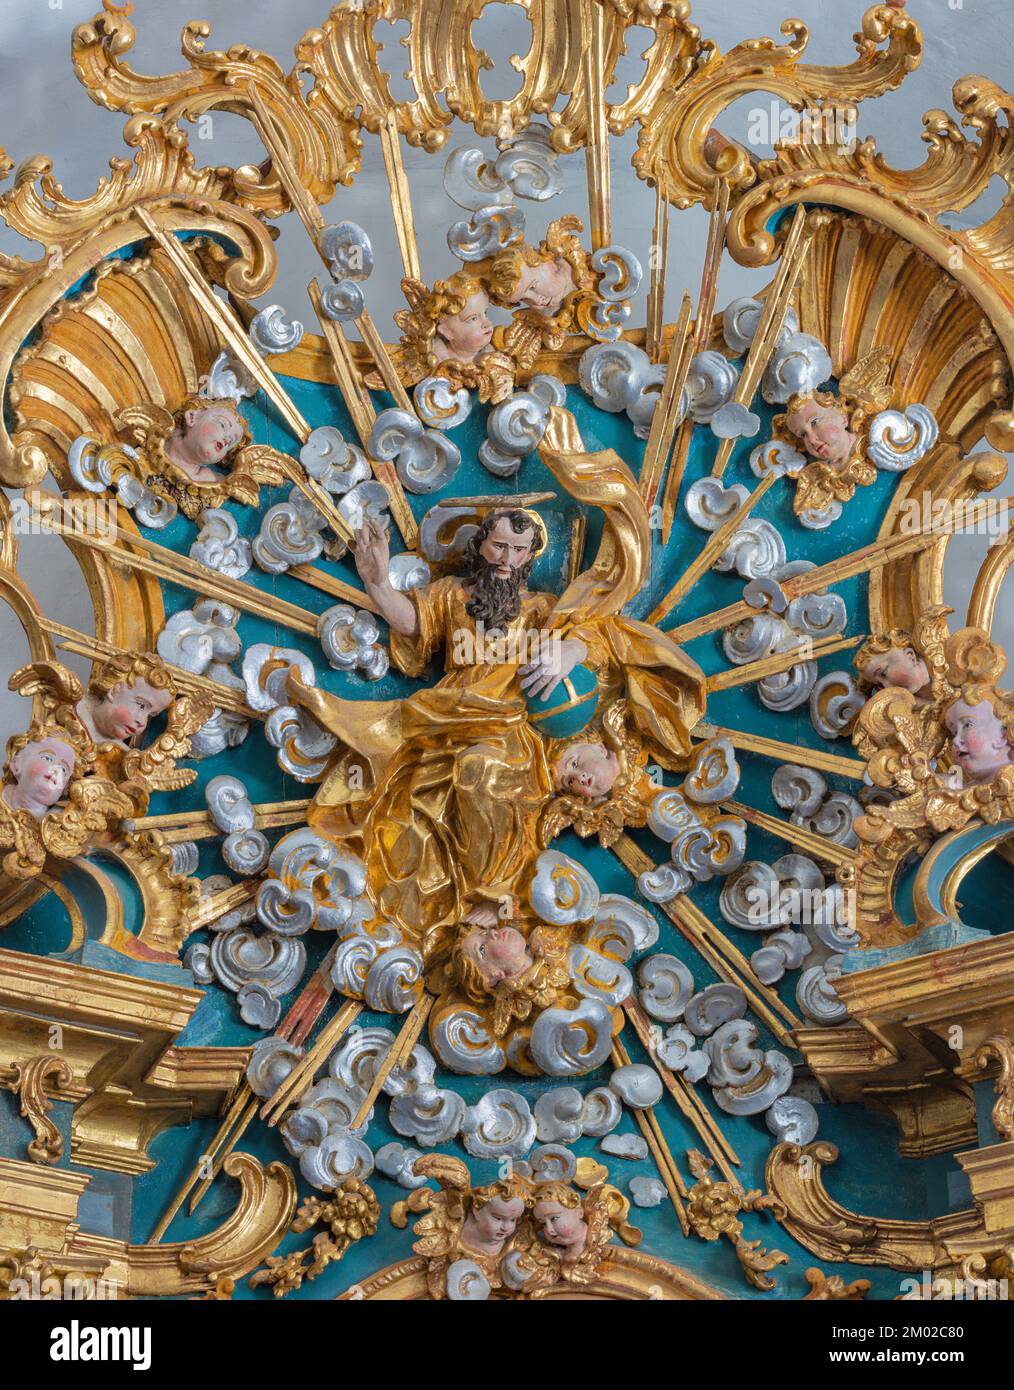 MORGEX, ITALIEN - 14. JULI 2018: Das geschnitzte, barocke, polychrome Relief Gottes des Schöpfers auf dem Hauptaltar der Kirche Chiesa di Santa Maria Assunta Stockfoto